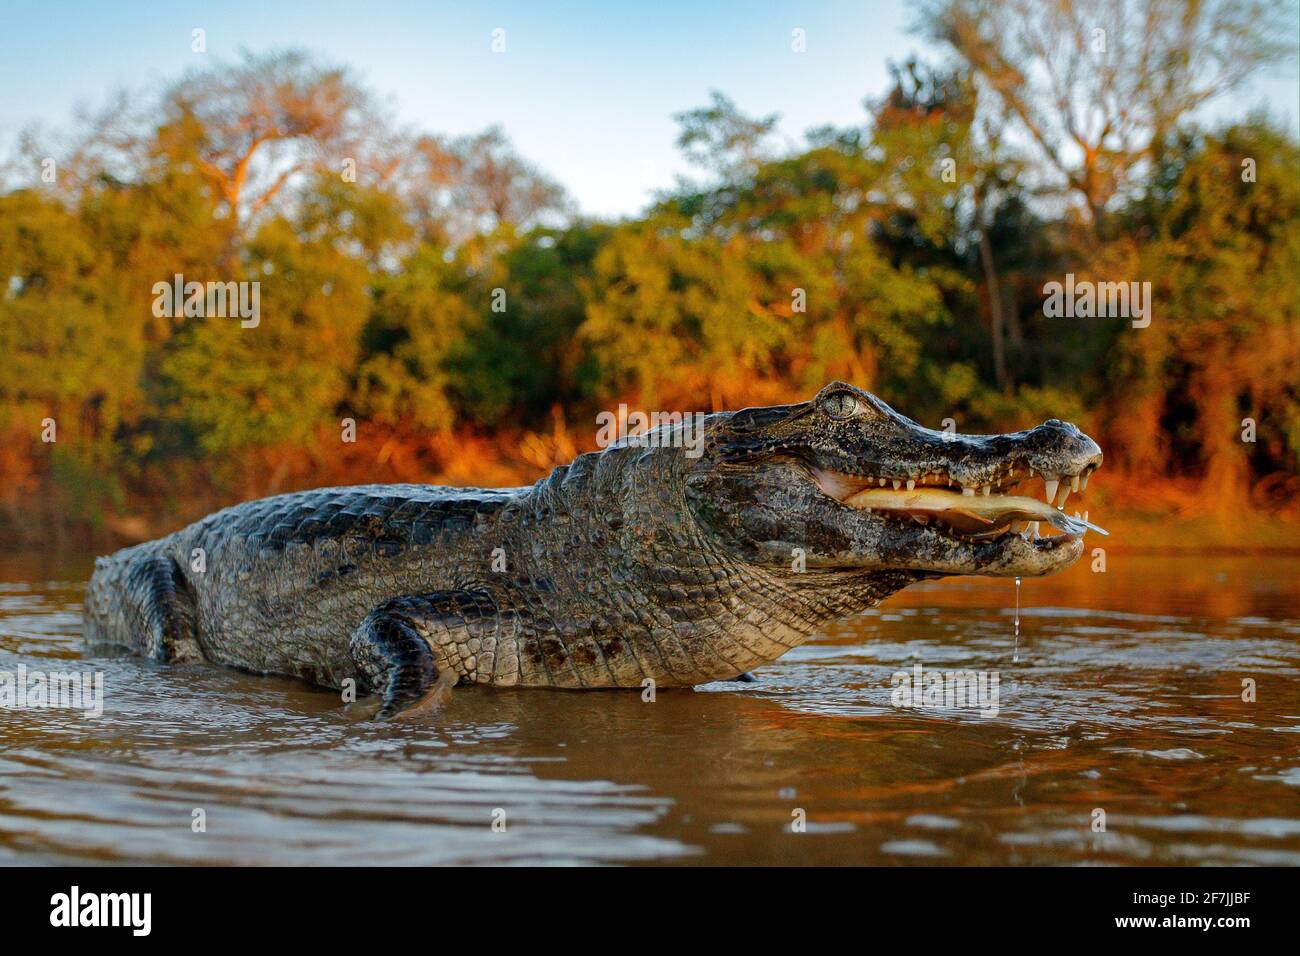 Coccodrillo cattura il pesce in acqua di fiume, luce della sera. Yacare Caiman, coccodrillo con piranha in museruola aperta con denti grandi, Pantanal, Bolivia. Dettaglio wid Foto Stock